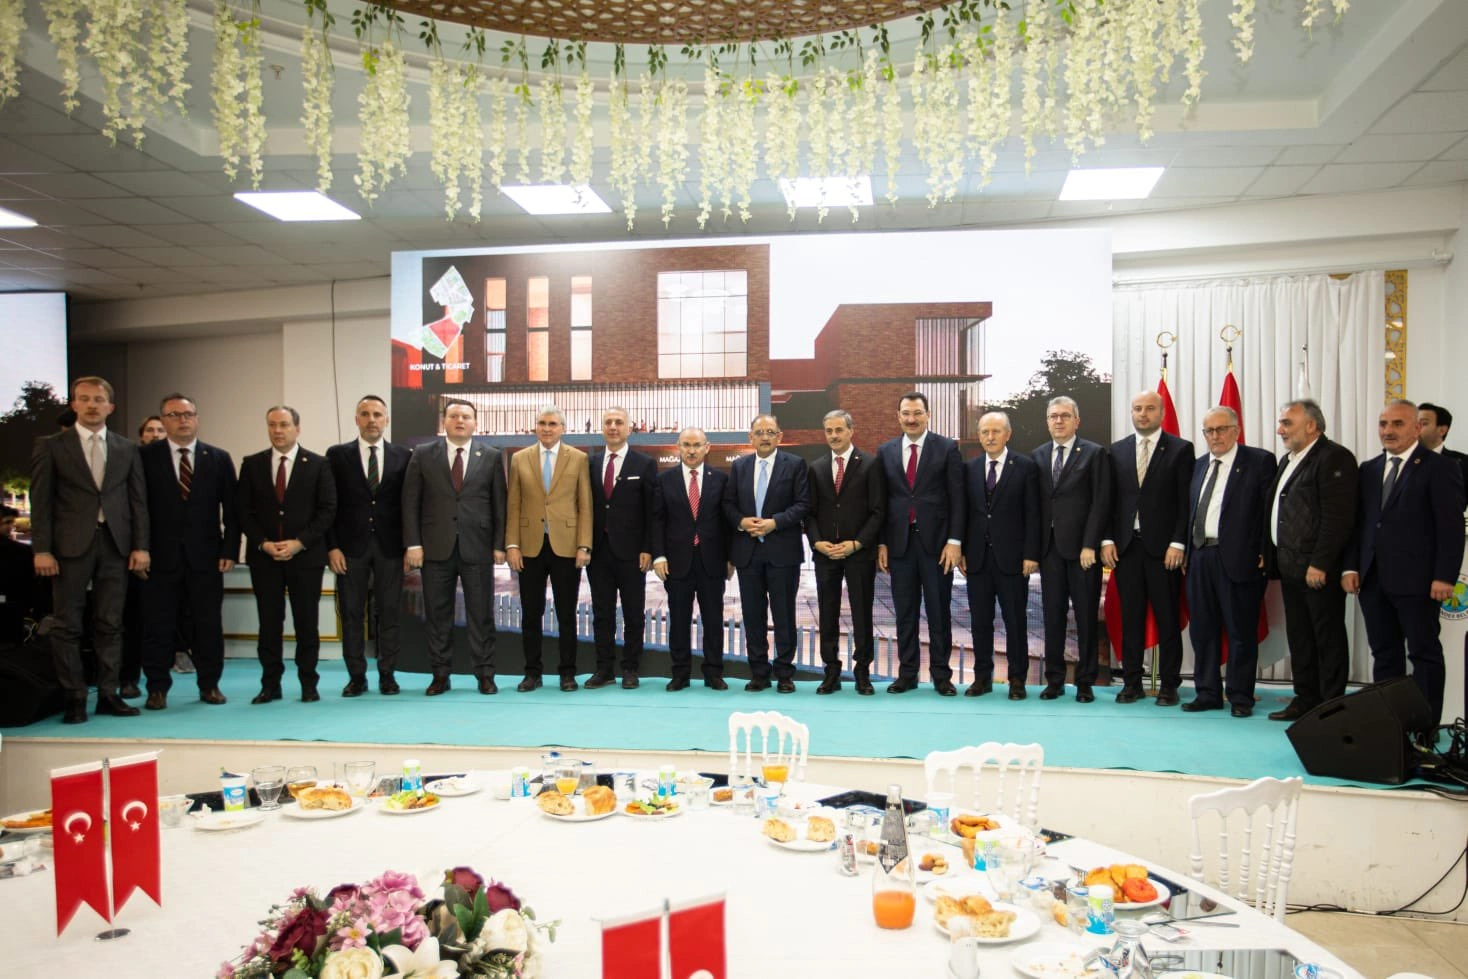 Bakanı Mehmet Özhaseki Iftar Programında Konuştu | Ada Hayat Yerinde Kentsel Dönüşüm Projesi